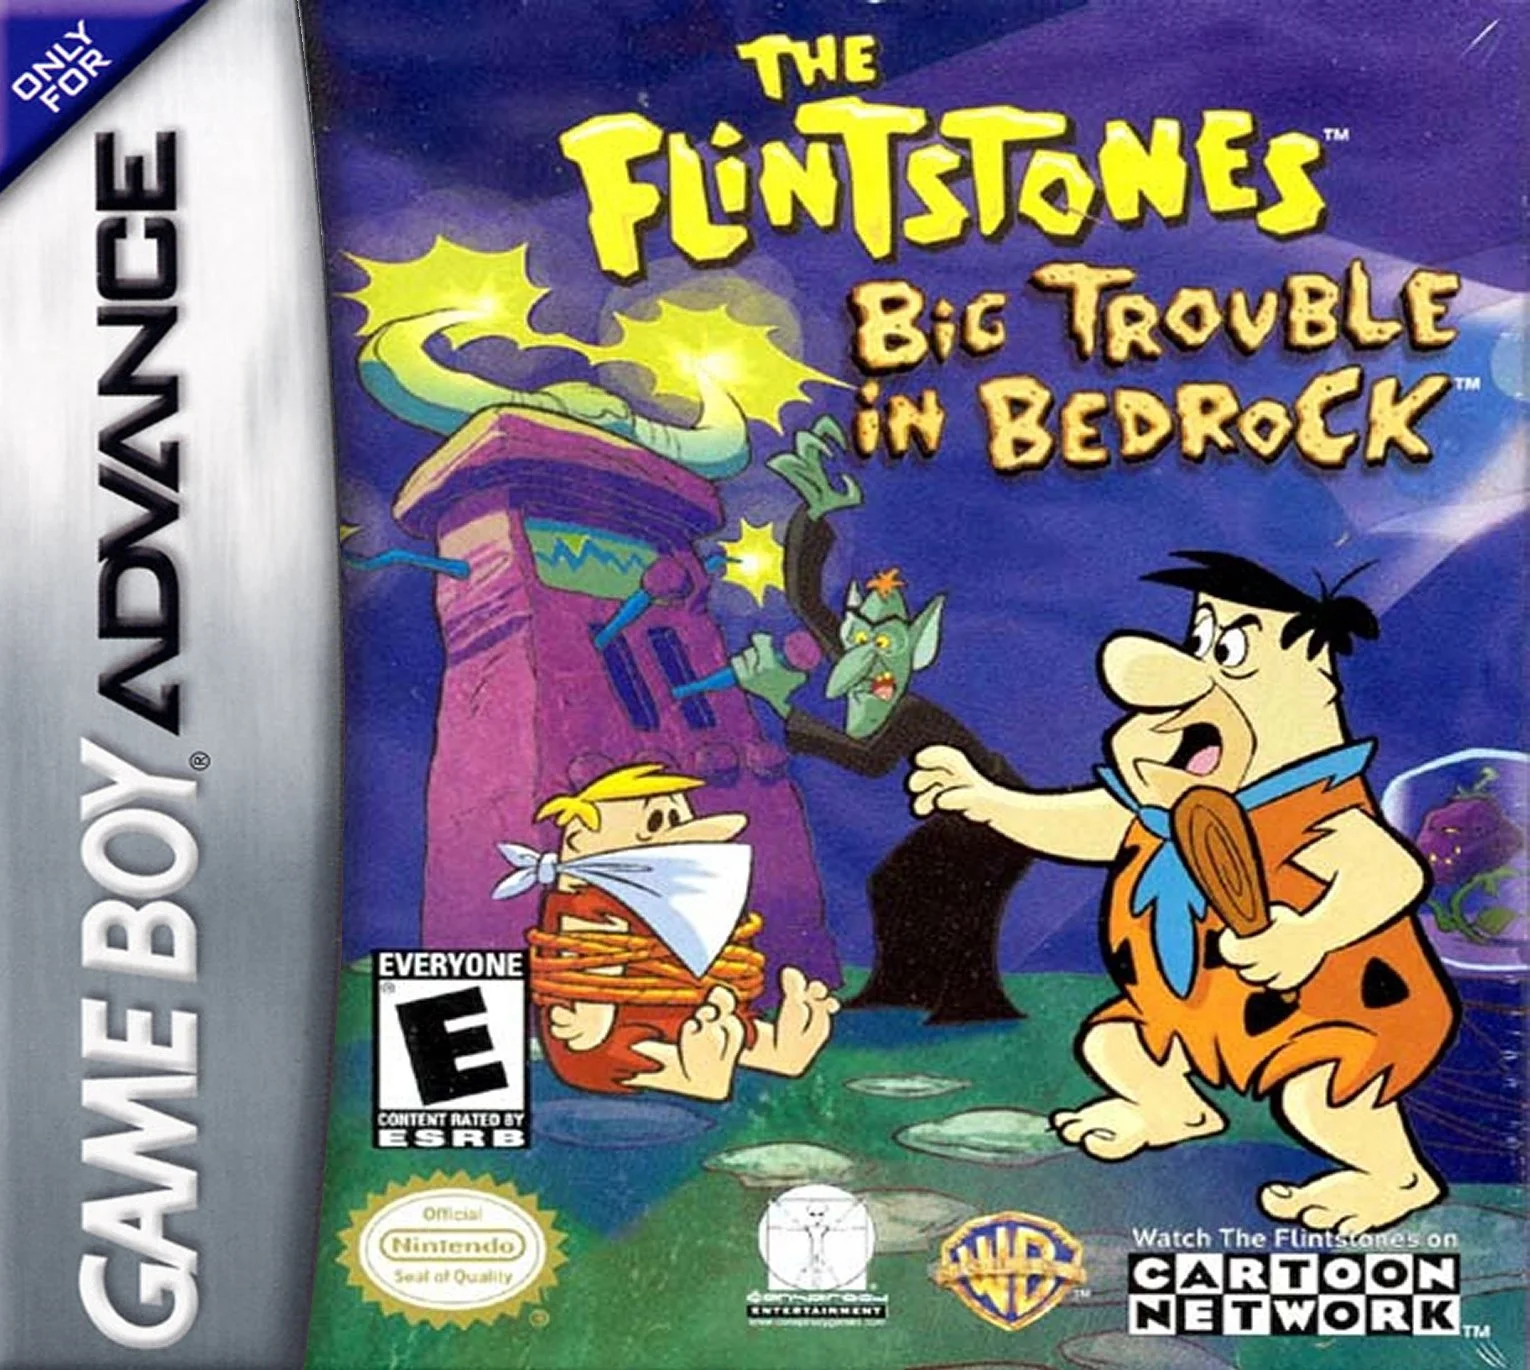 The Flintstones: Big Trouble in Bedrock